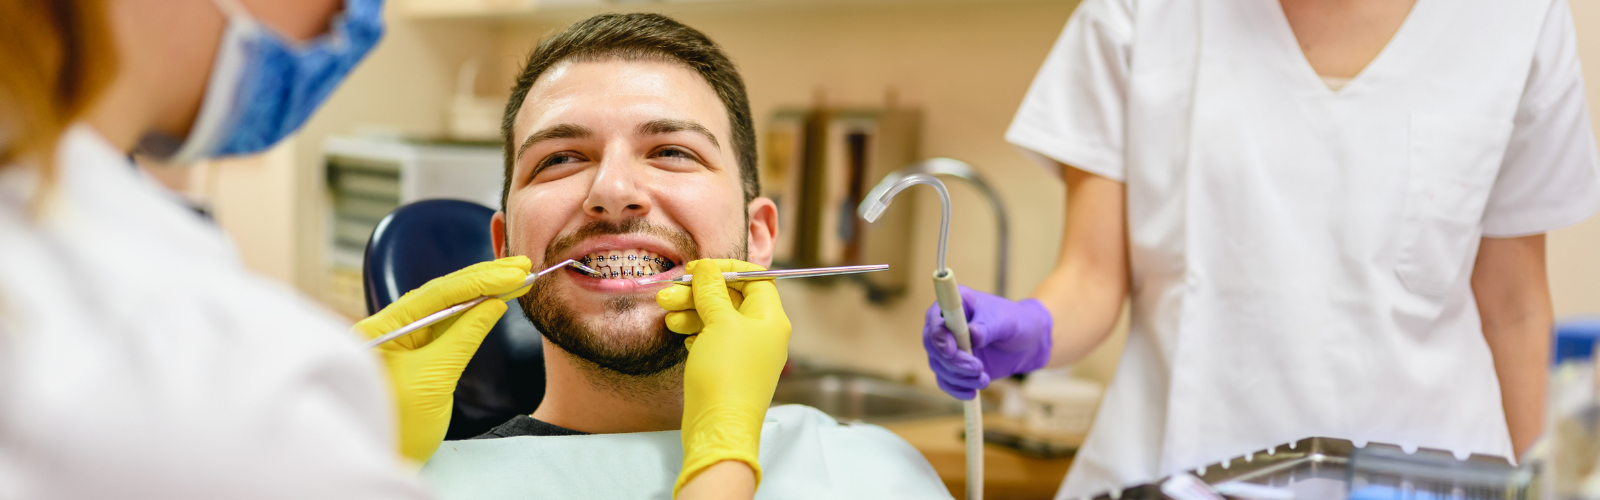 Dr. Chelian Orthodontics